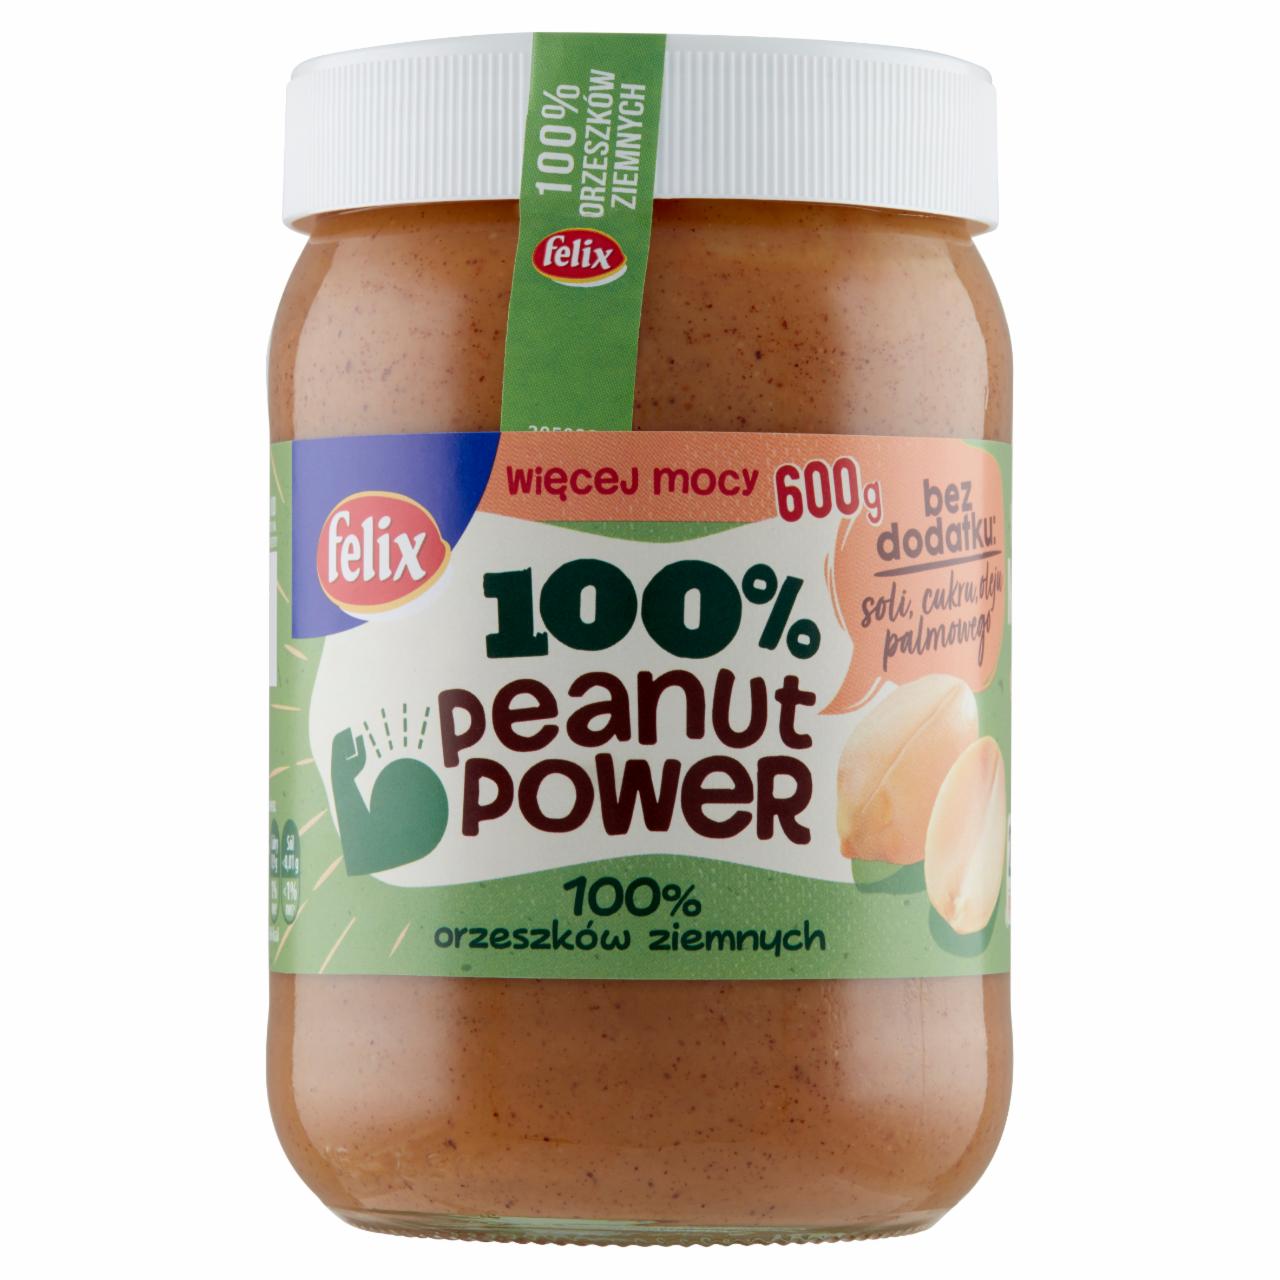 Zdjęcia - Felix Peanut Power 100% Pasta orzechowa 600 g